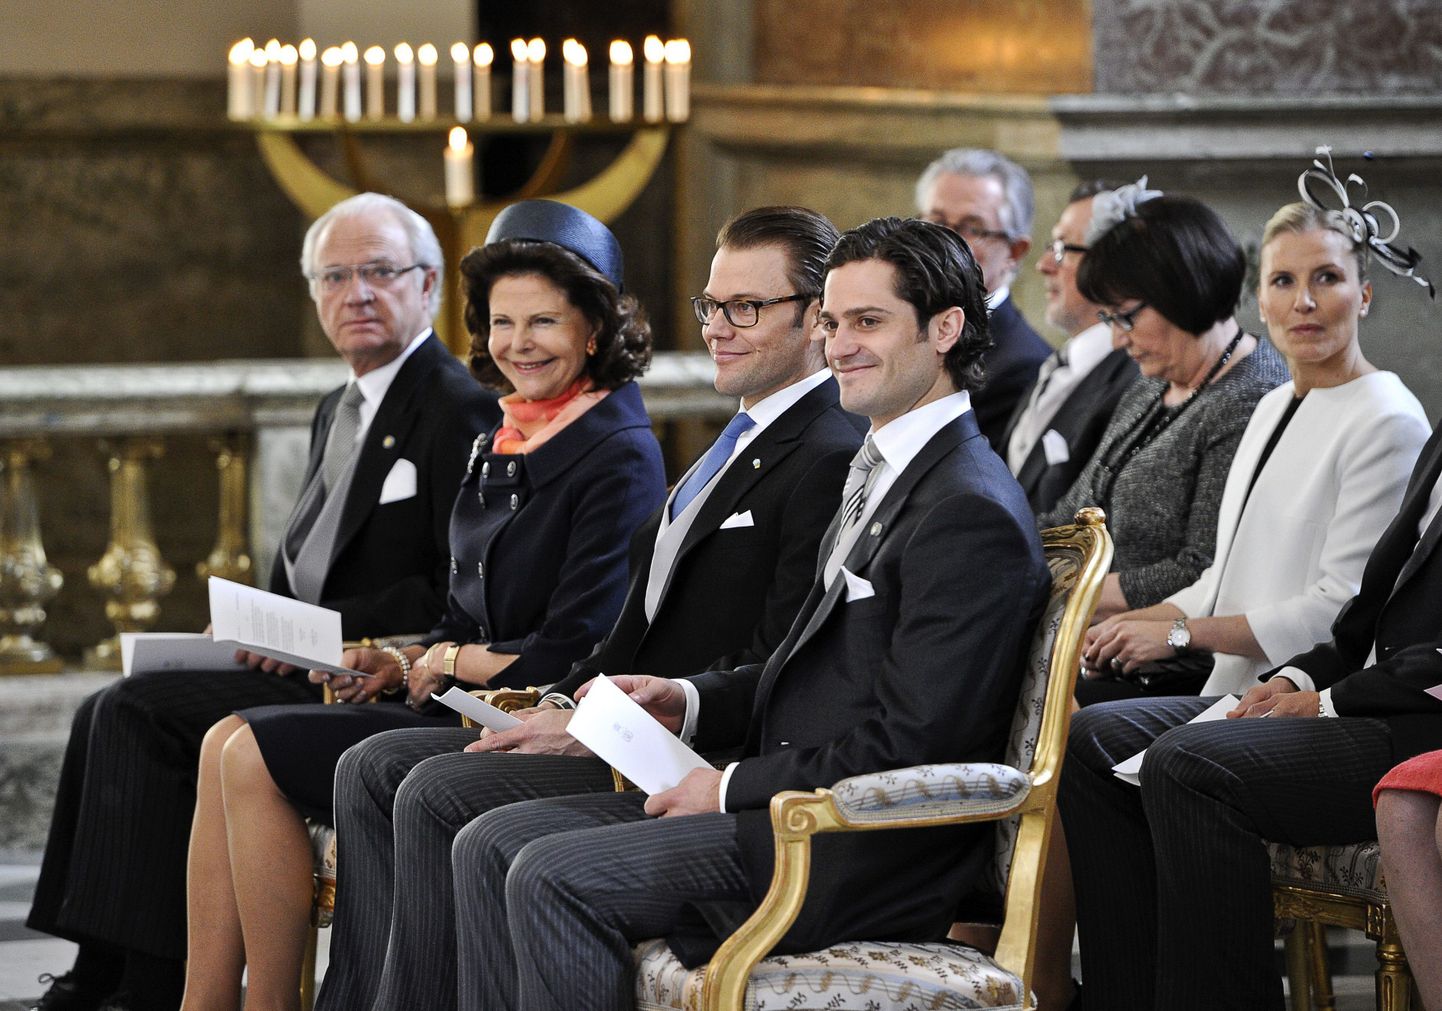 Esireas kuningas Carl XVI Gustaf, kuninganna Silvia, prints Daniel ja prints Carl Philip. Teises reas paremalt Anna Söderström (prints Danieli õde), Ewa ja Olle Westling (prints Danieli vanemad).